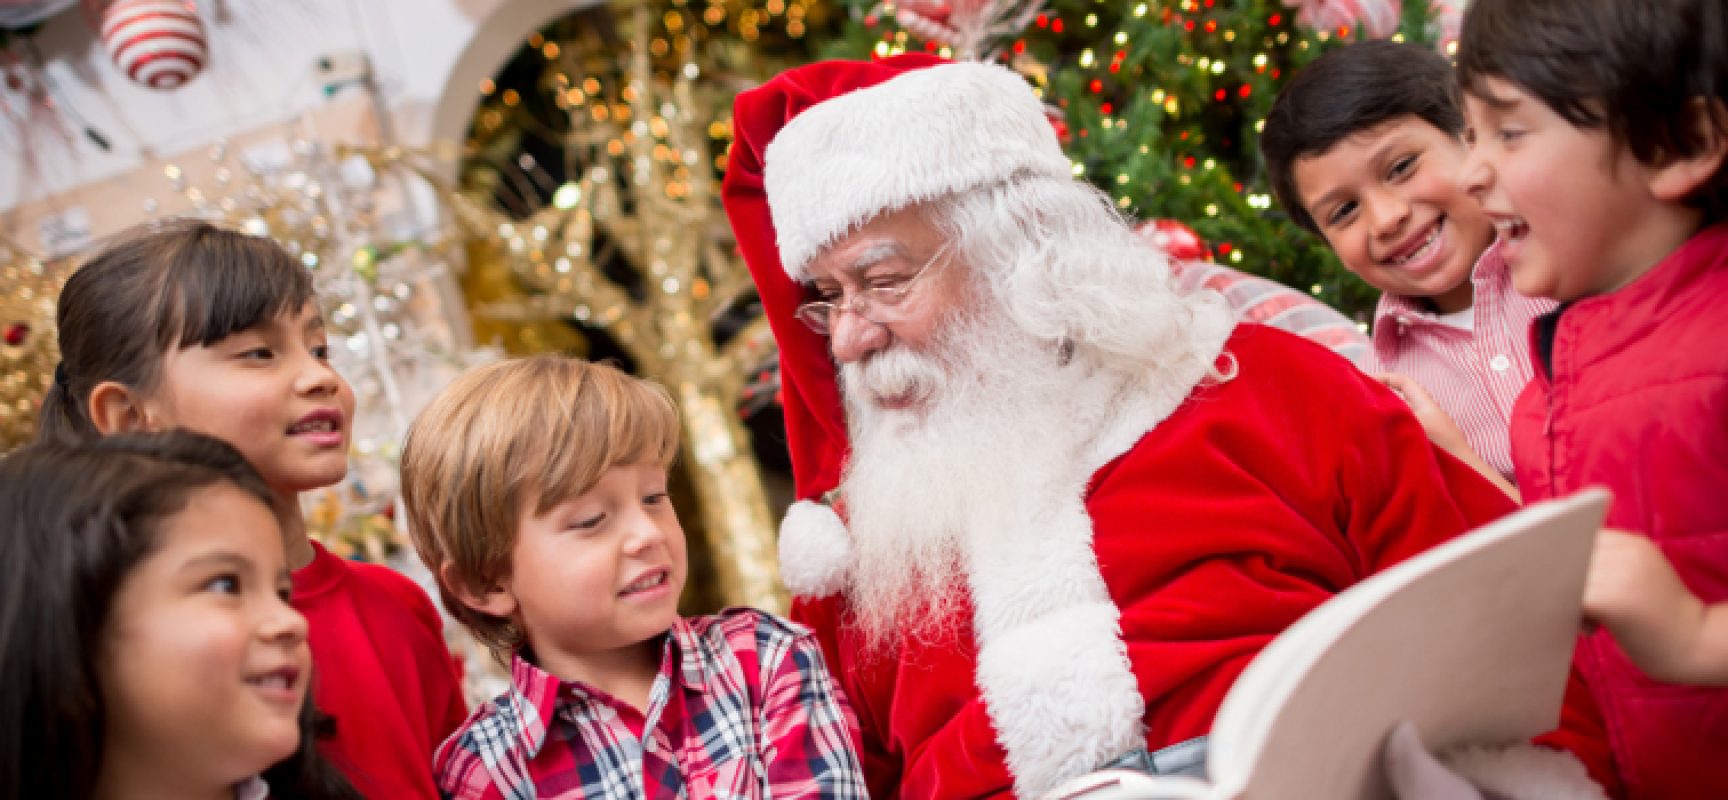 “Natale in sanitaria”, Babbo Natale incontra i bambini